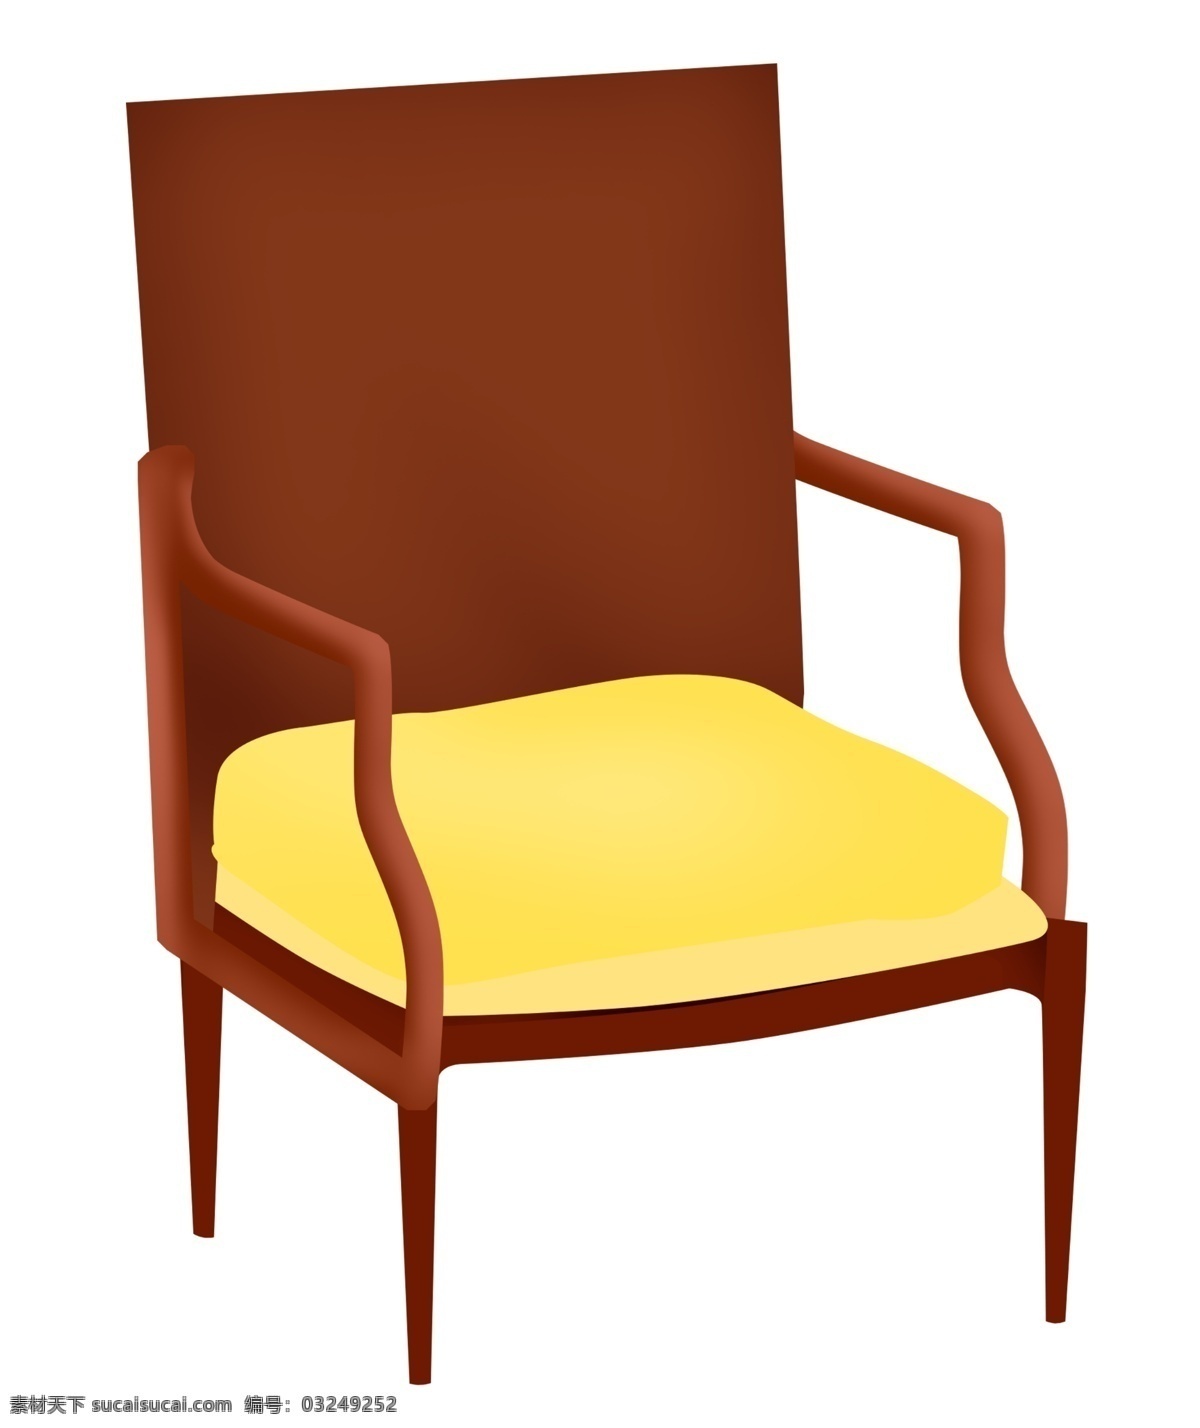 红色 椅子 装饰 插画 红色的椅子 家具椅子 漂亮的椅子 创意椅子 立体椅子 木头椅子 椅子装饰